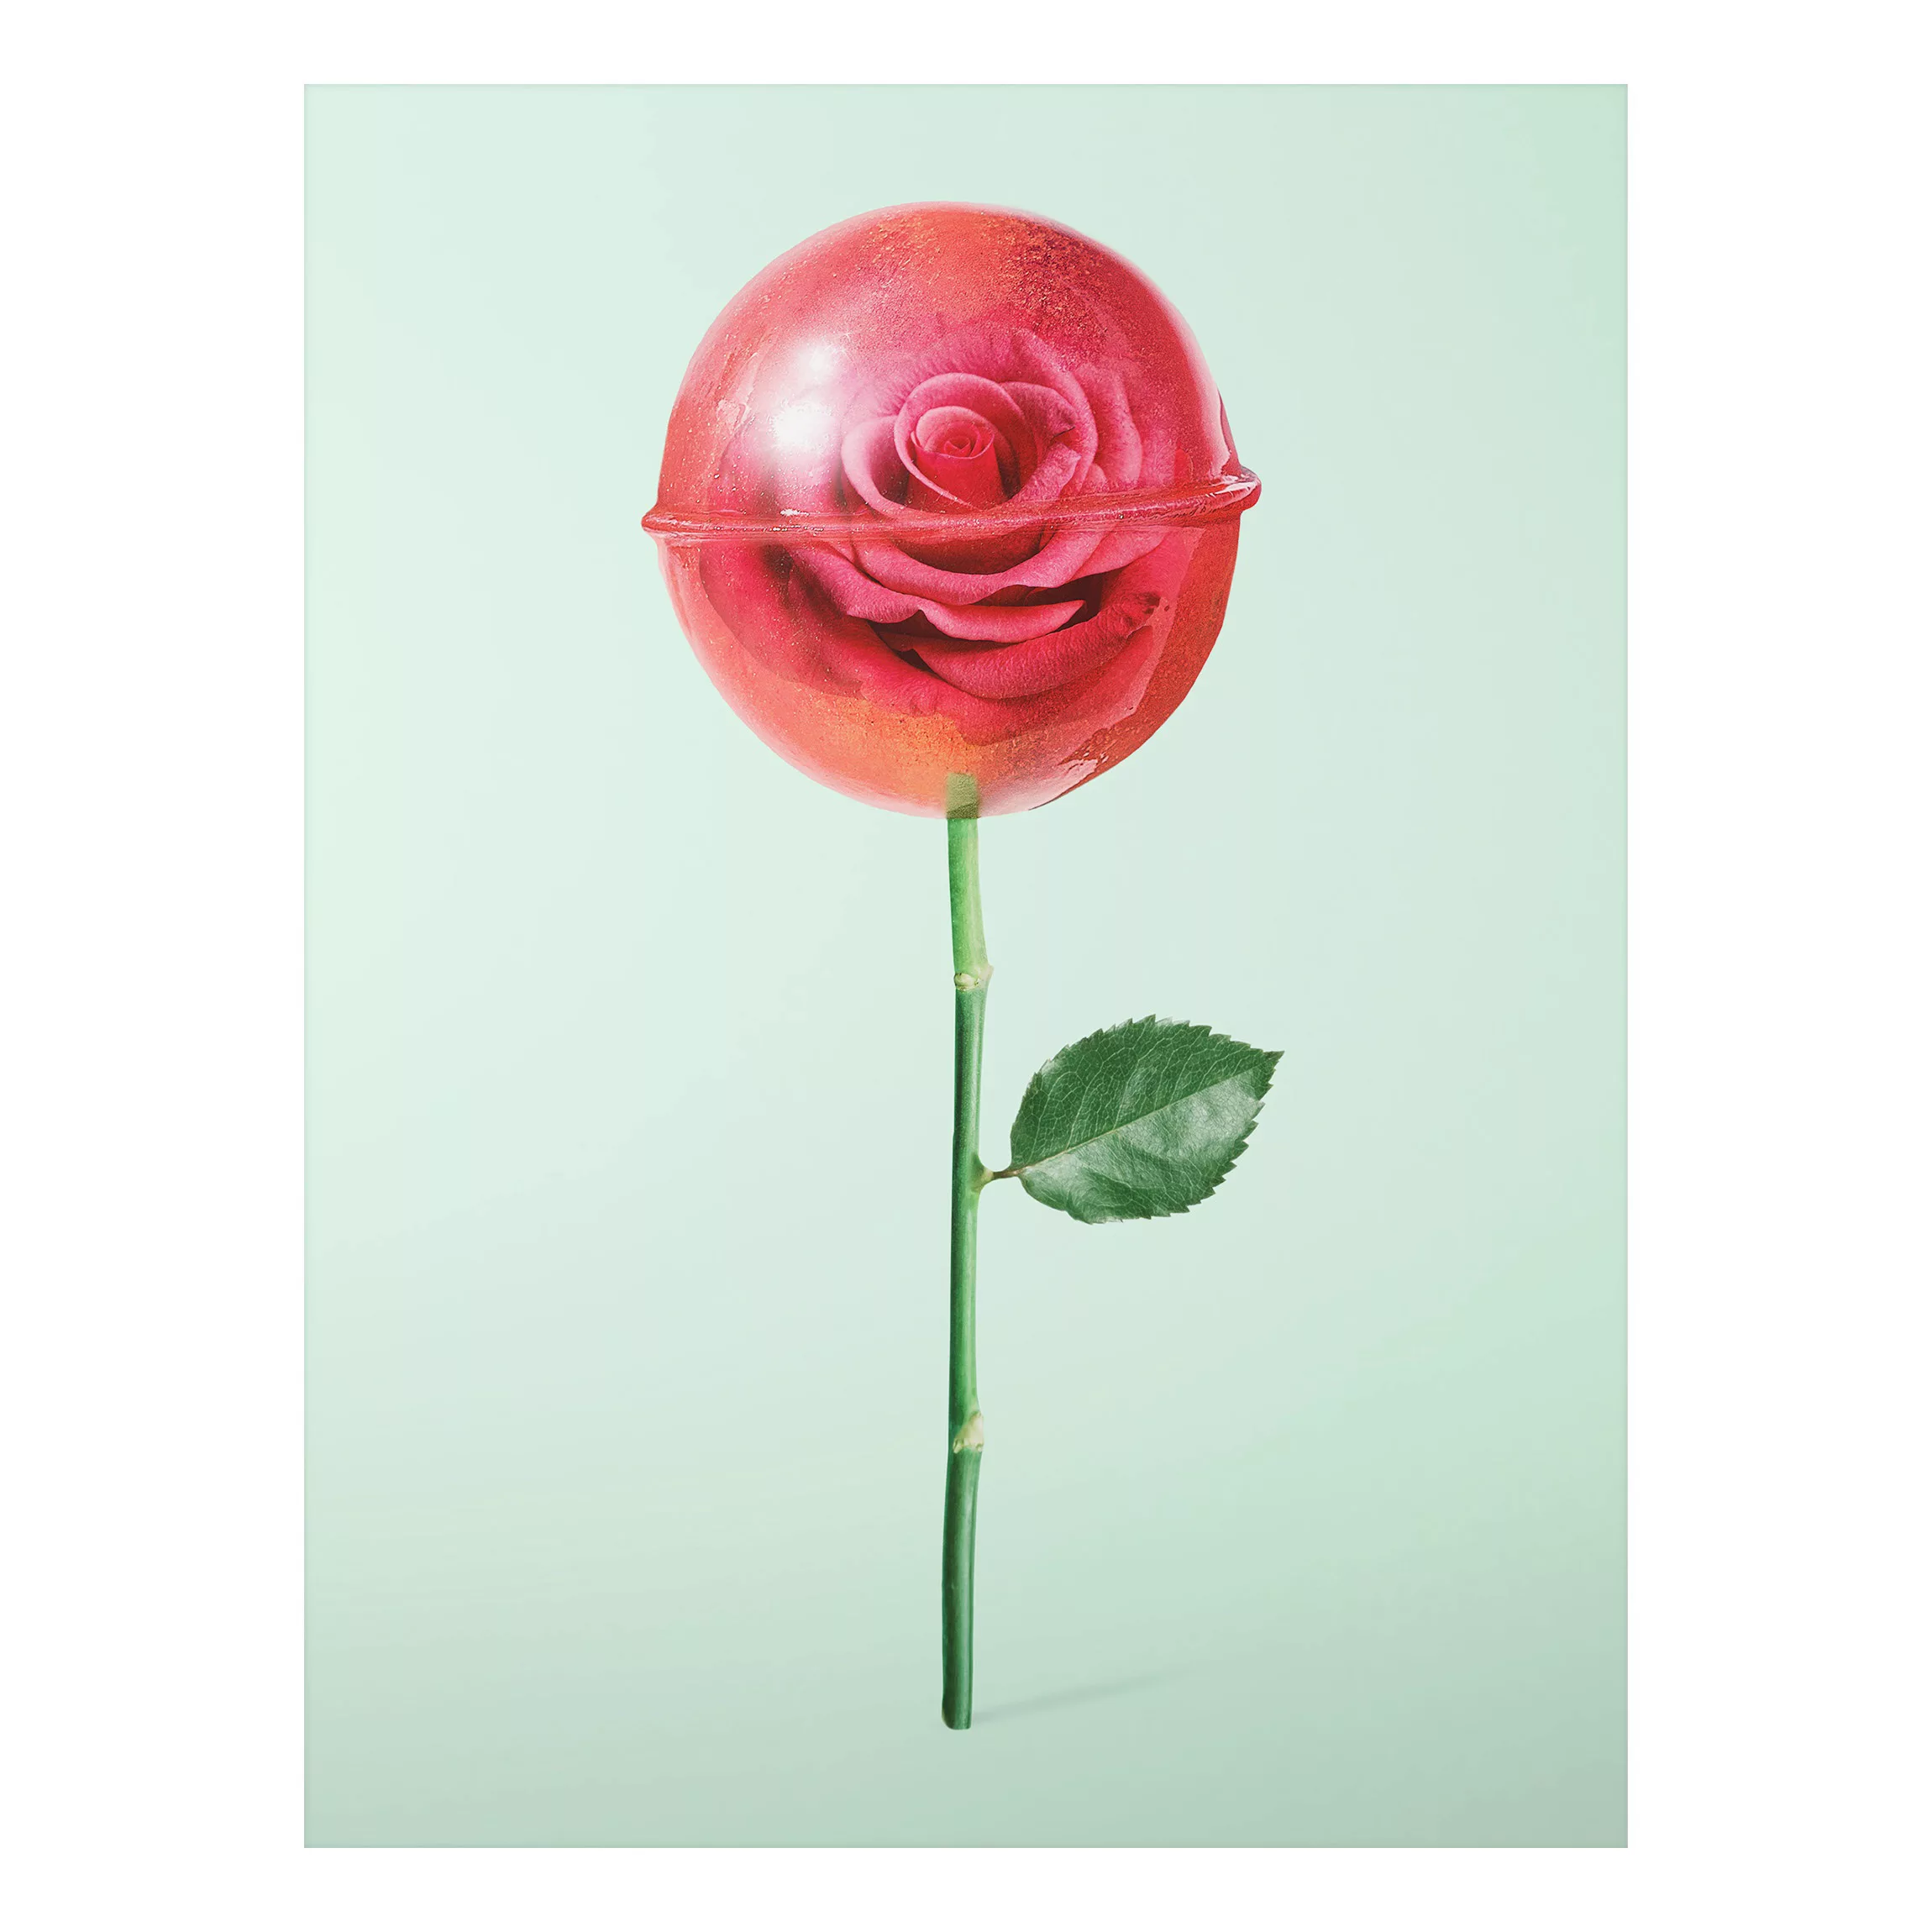 Alu-Dibond Bild Blumen - Hochformat 3:4 Rose mit Lollipop günstig online kaufen